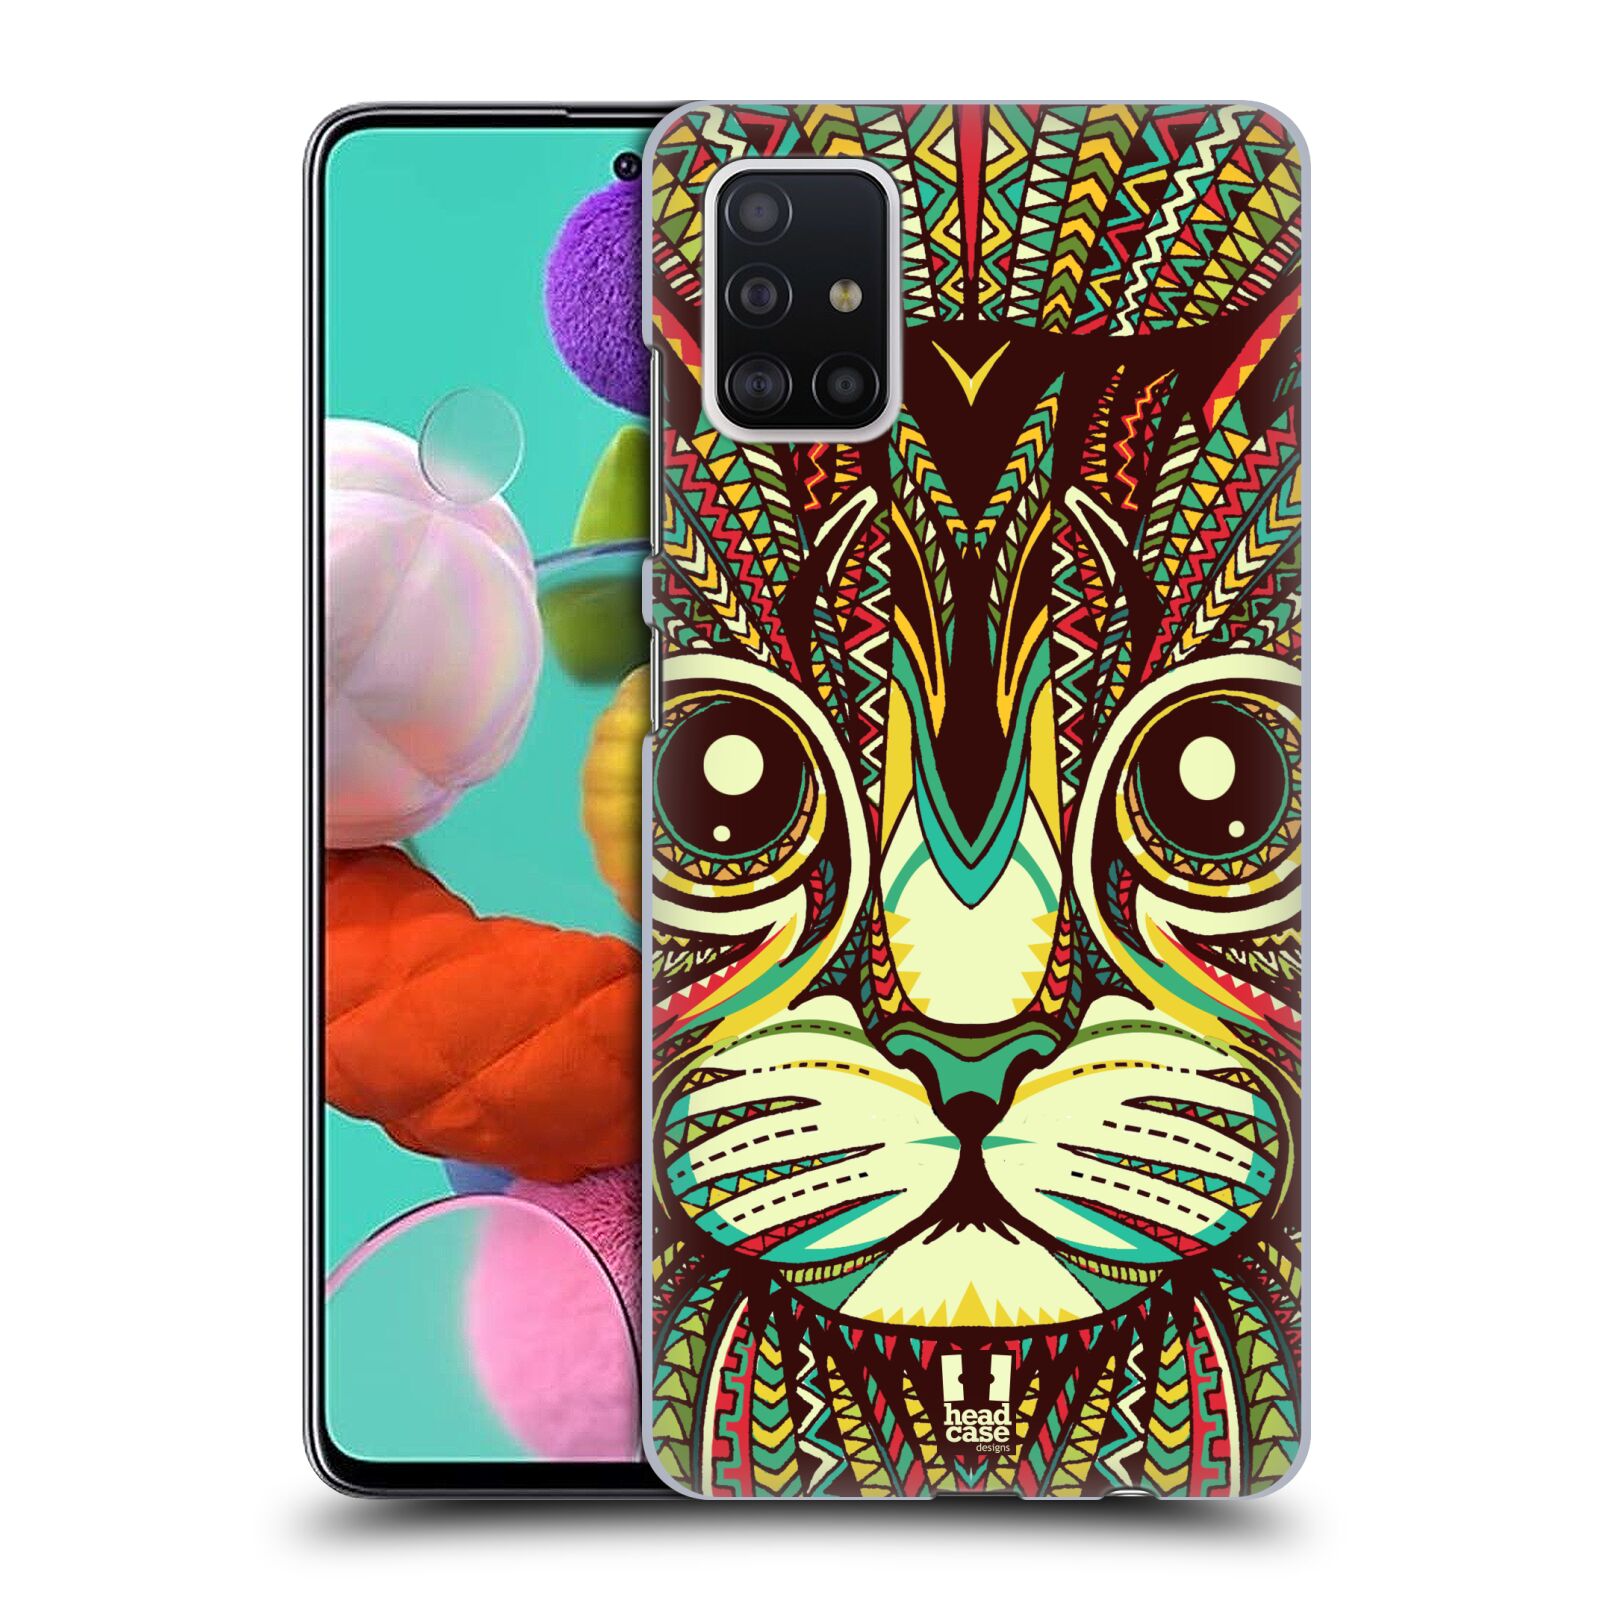 Pouzdro na mobil Samsung Galaxy A51 - HEAD CASE - vzor Aztécký motiv zvíře 2 kotě